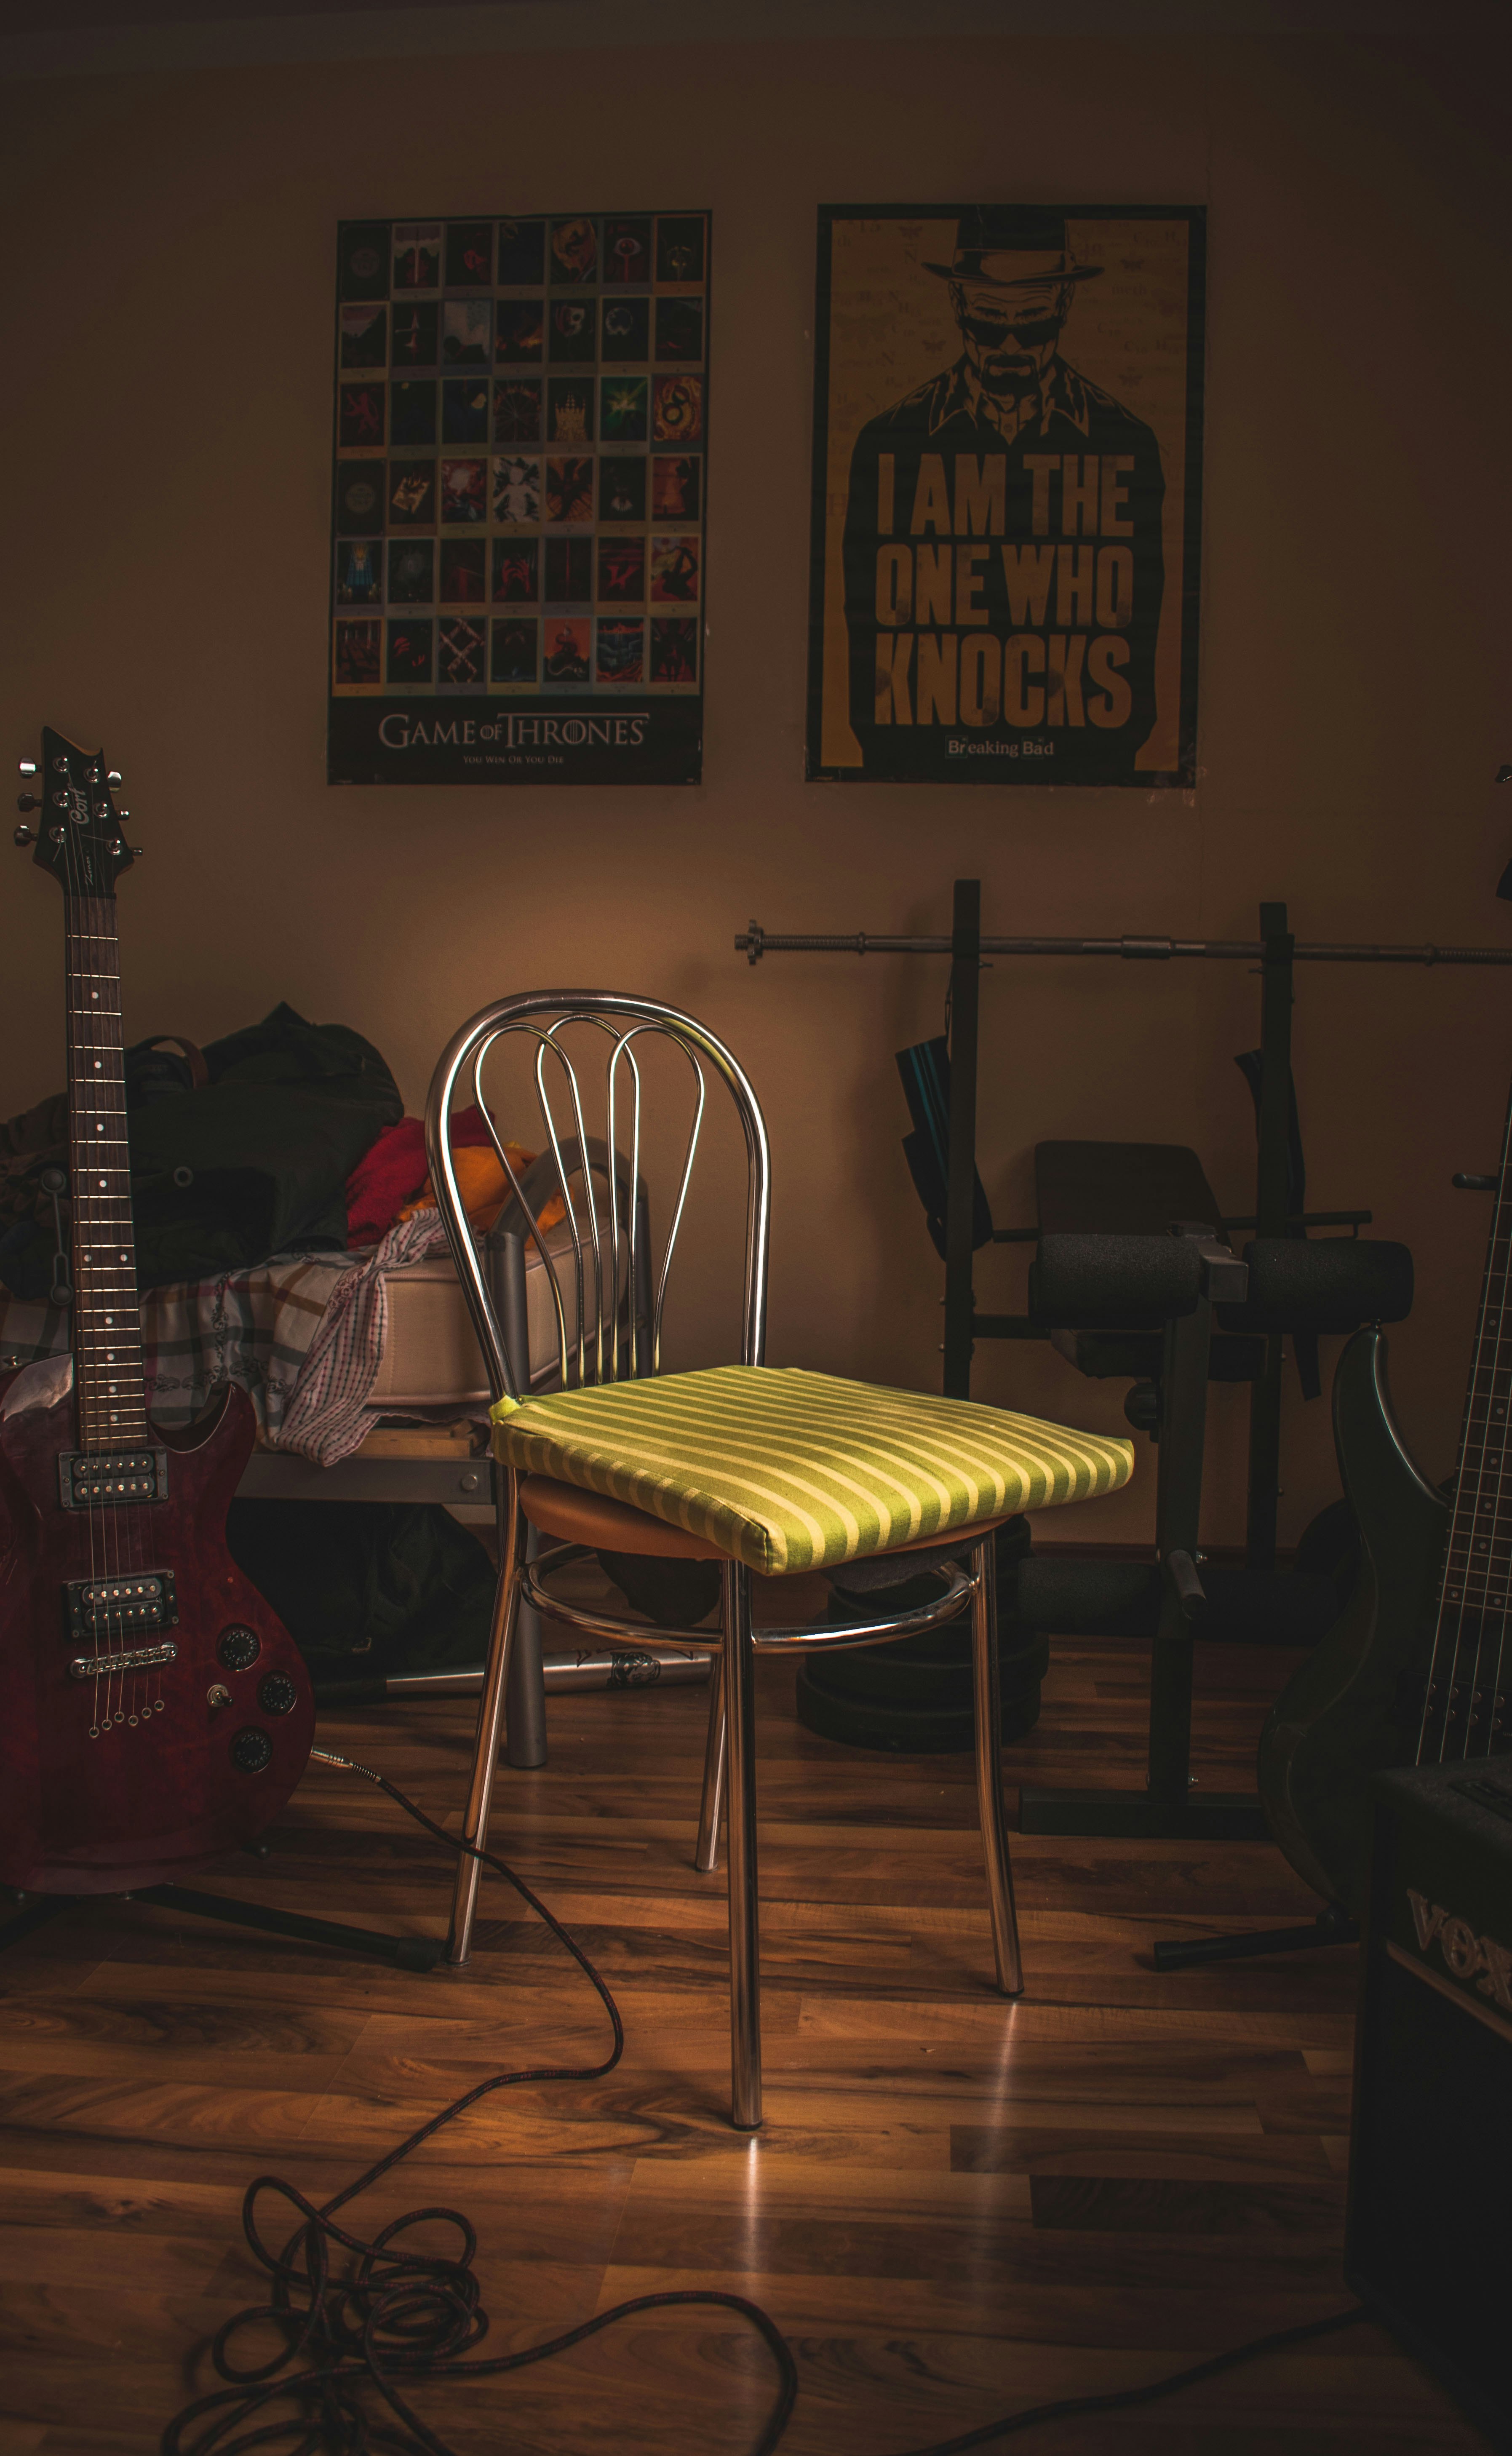 green cloth on chair near guitar